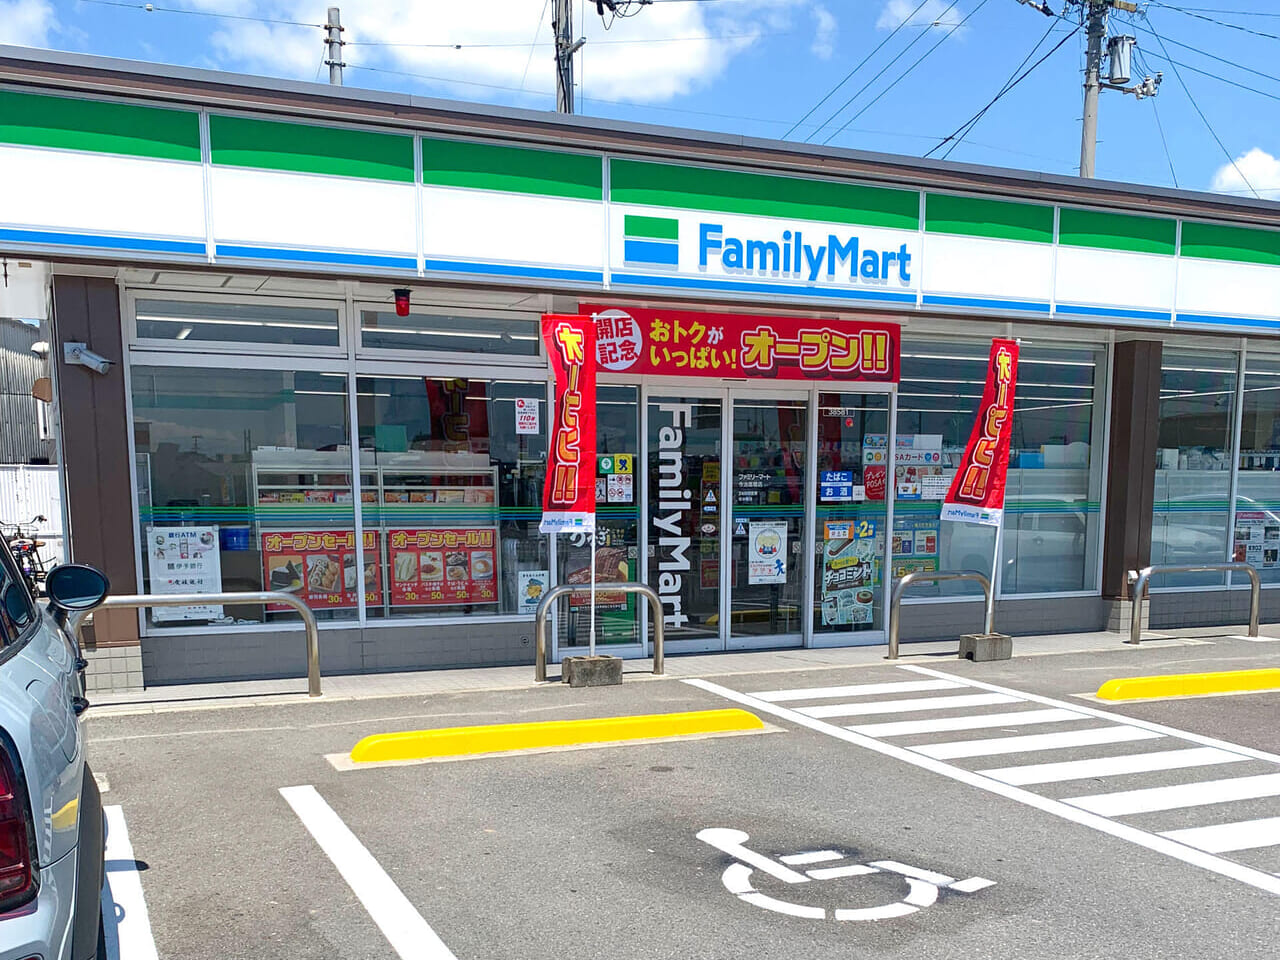 リニューアル工事を行っていた「ファミリーマート今治高橋店」がオープンしました!!